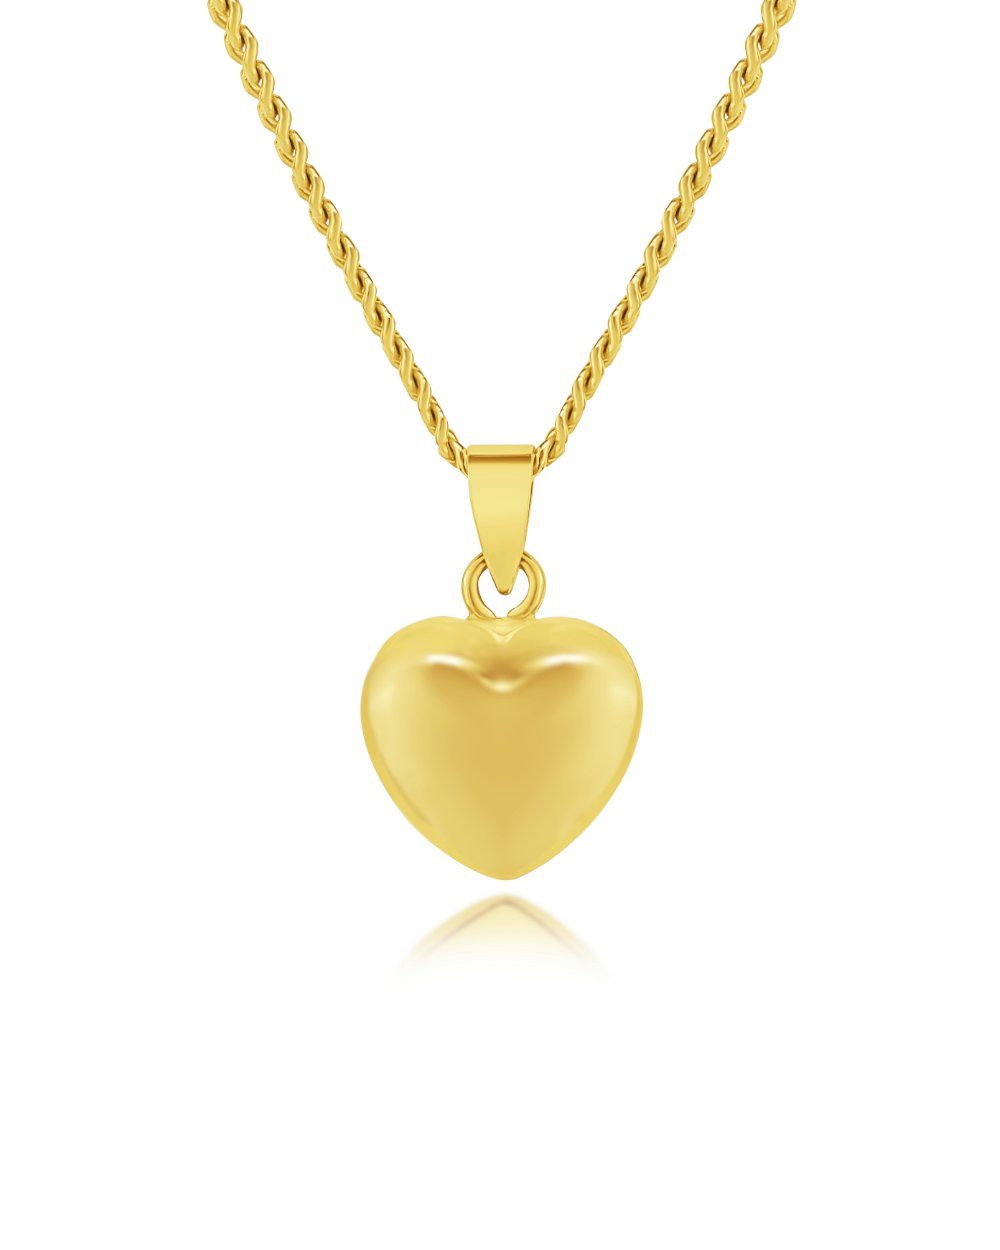 DANIEL CLIFFORD Herzkette 'Milena' Damen Herzkette 585 Gold 14k Echtgold Anhänger Herz (inkl. Verpackung), 45cm filigrane 14 Karat Goldkette mit mini Herz Anhänger